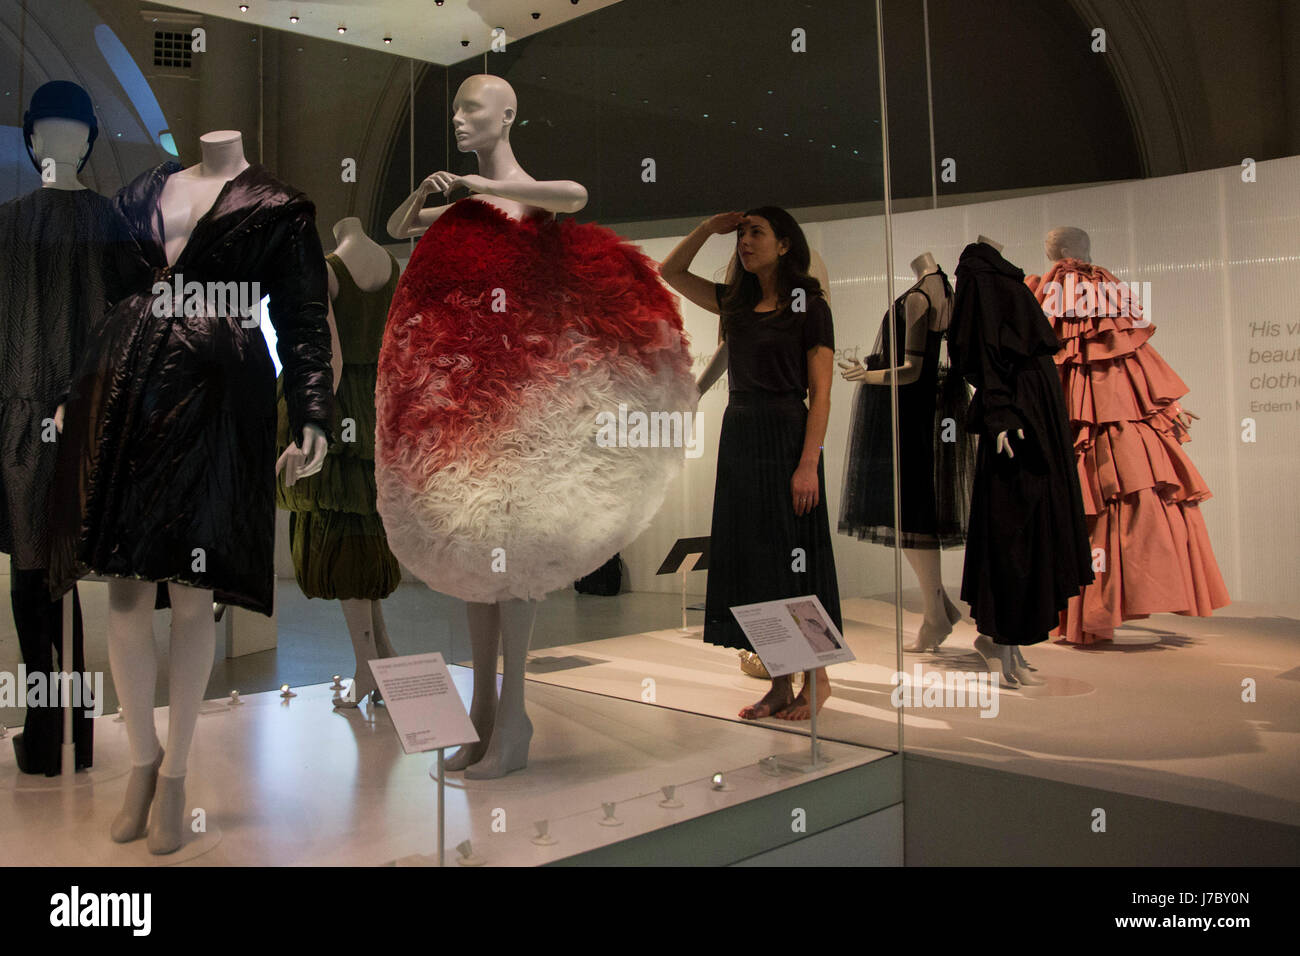 Londres, Reino Unido. 24 de mayo de 2017. Un empleado del museo Balenciaga  mira el cuerpo inspirado por Hussein Chalayan vestido de oscurecimiento. El  V&A Museum presenta la exposición Balenciaga: Conformación de